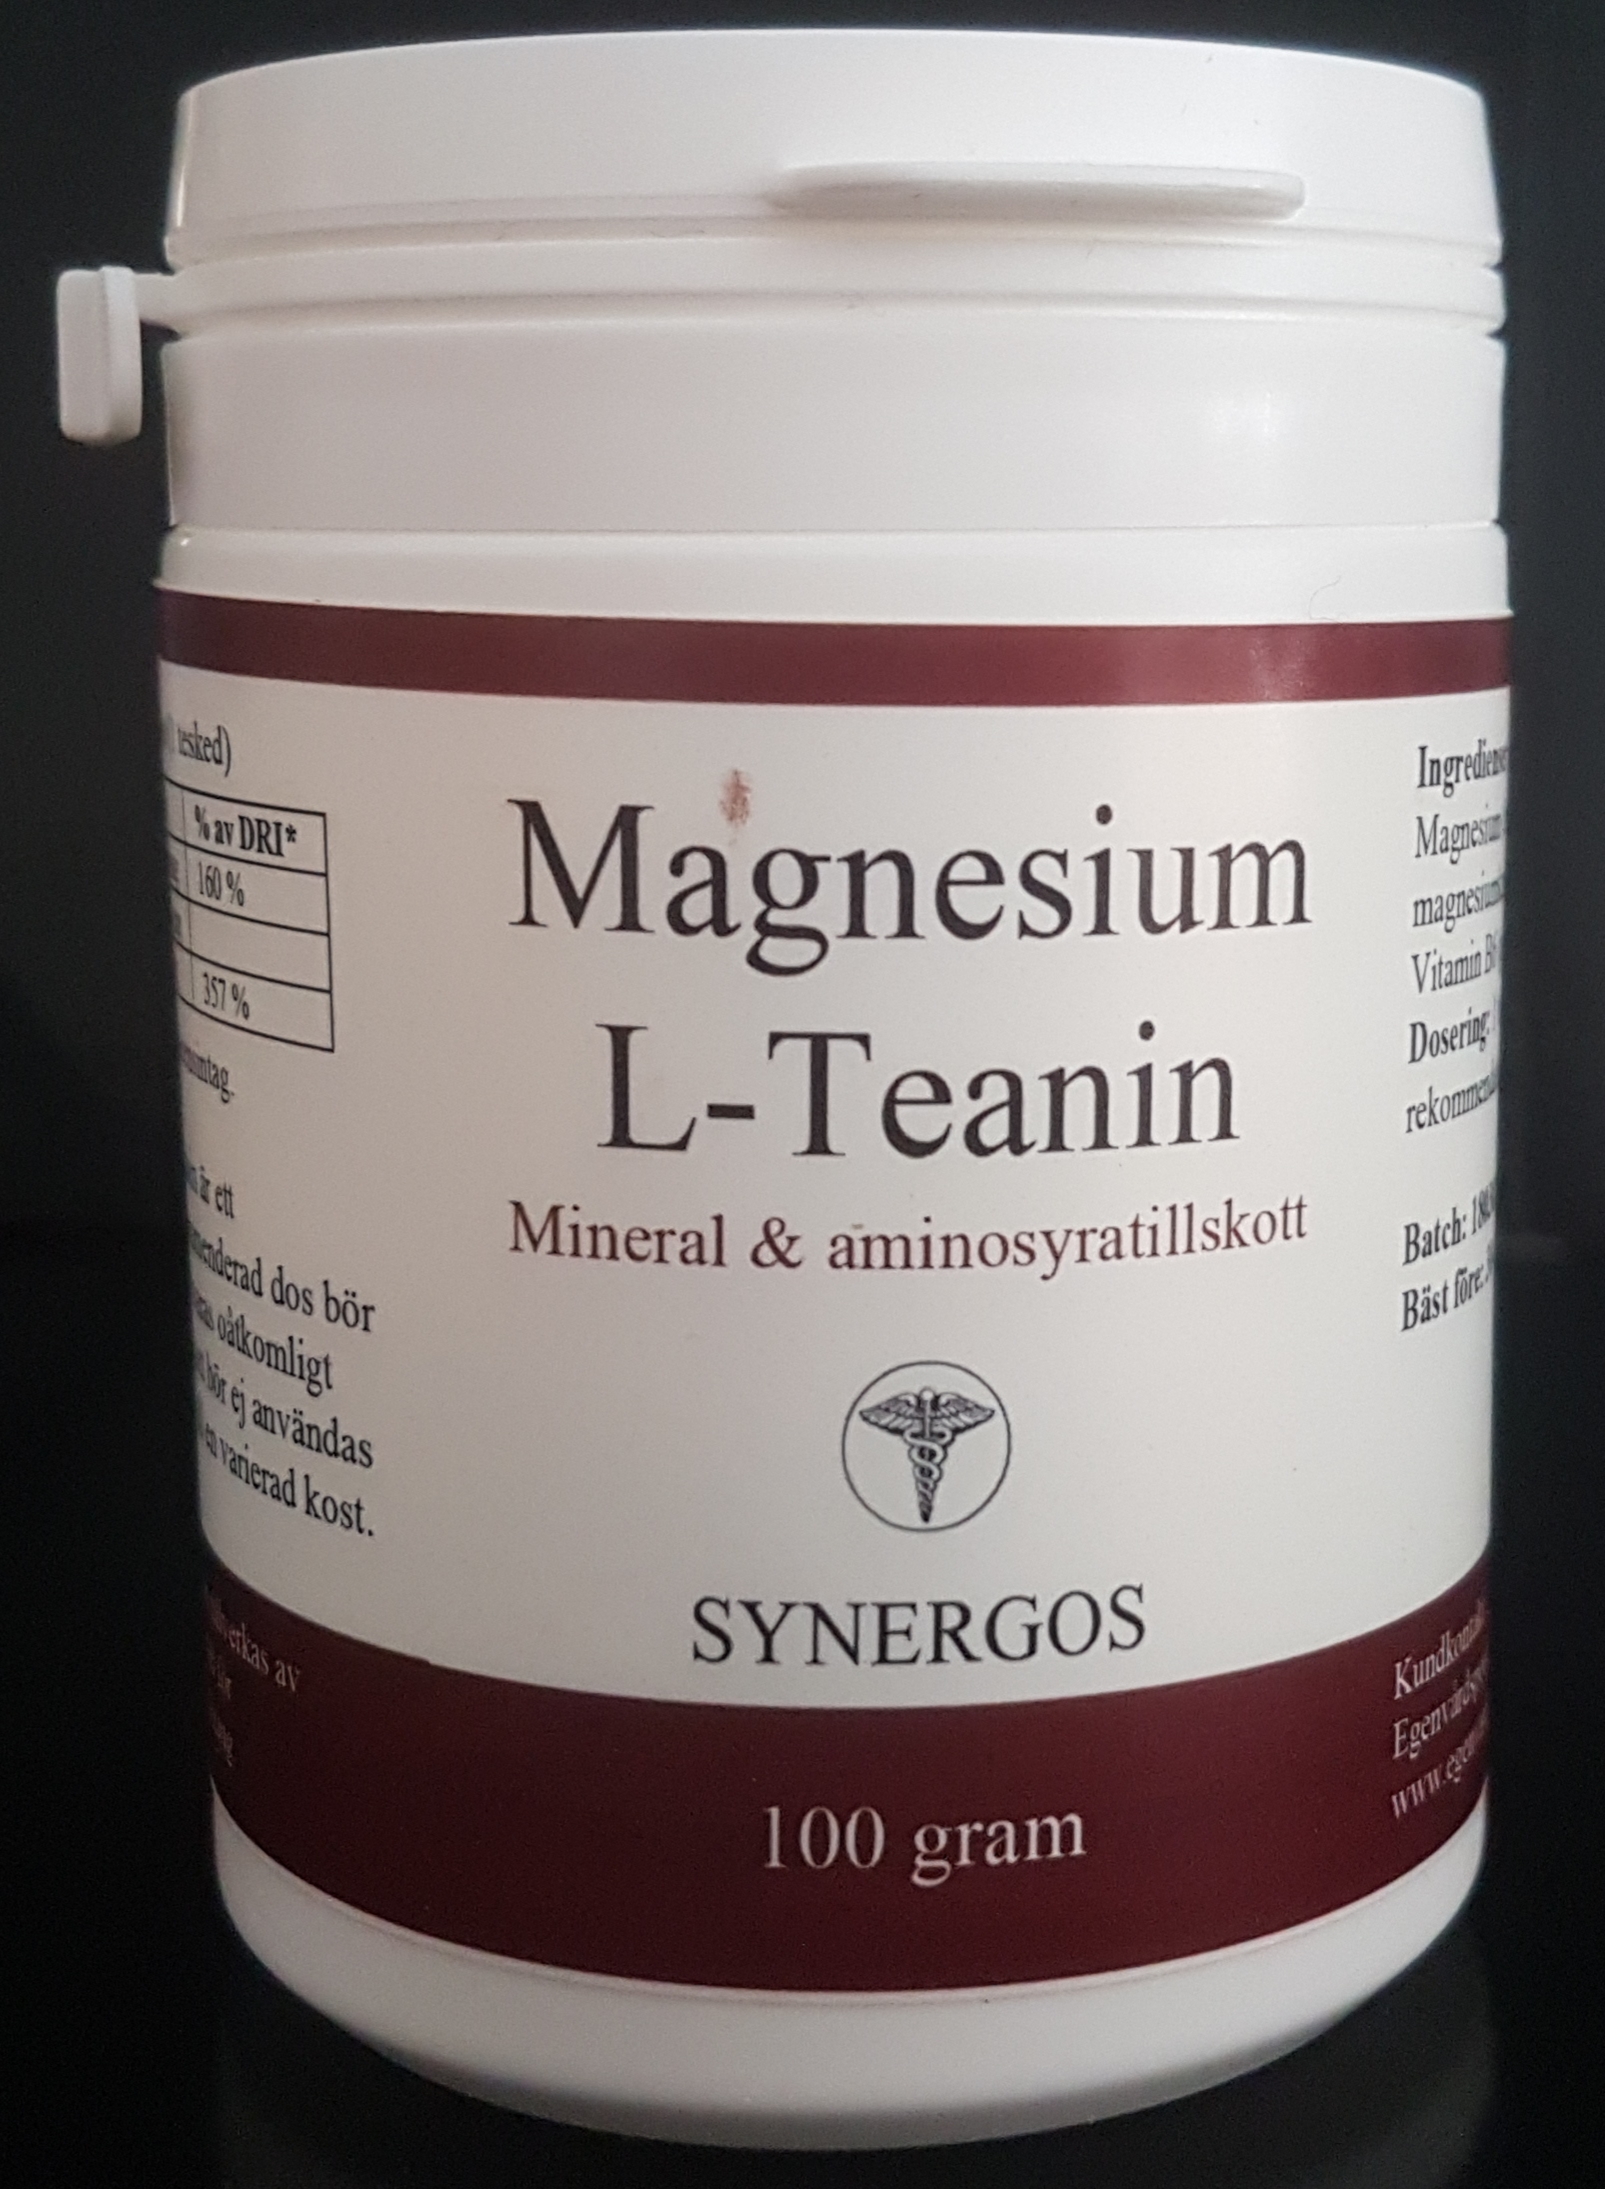 Magnesium L-Teanin